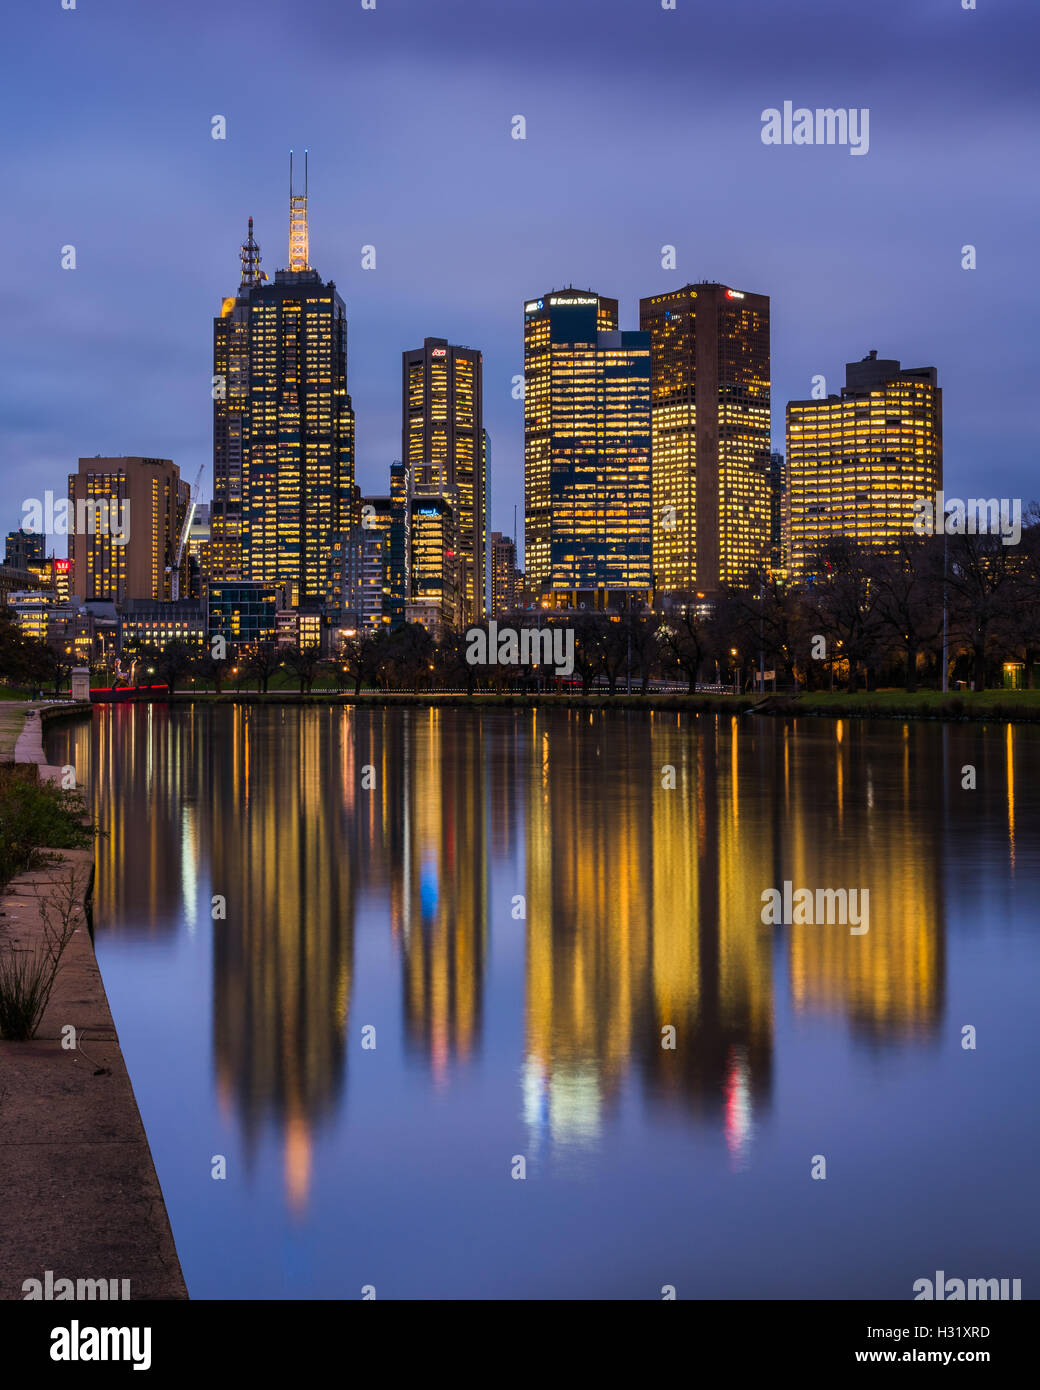 Gratte-ciels qui se reflètent sur la Yarra River, près du quartier central des affaires de Melbourne, Victoria, Australie Banque D'Images